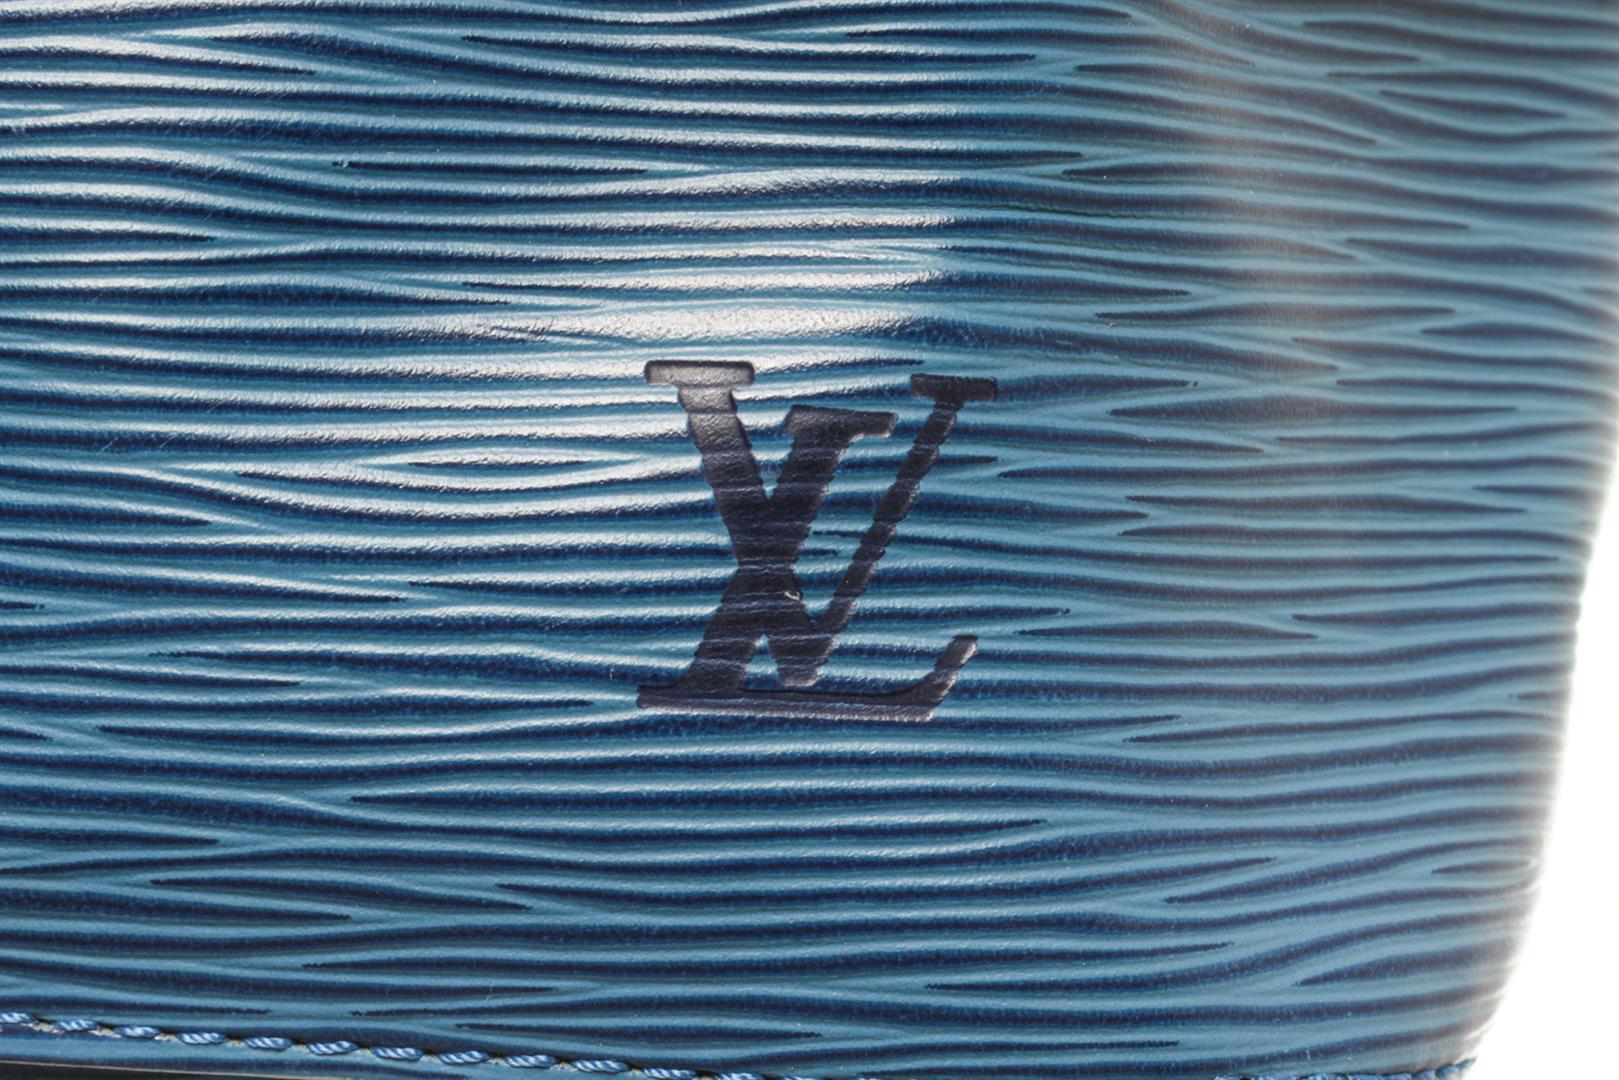 Louis Vuitton Blue Epi Leather Noe PM Shoulder Bag